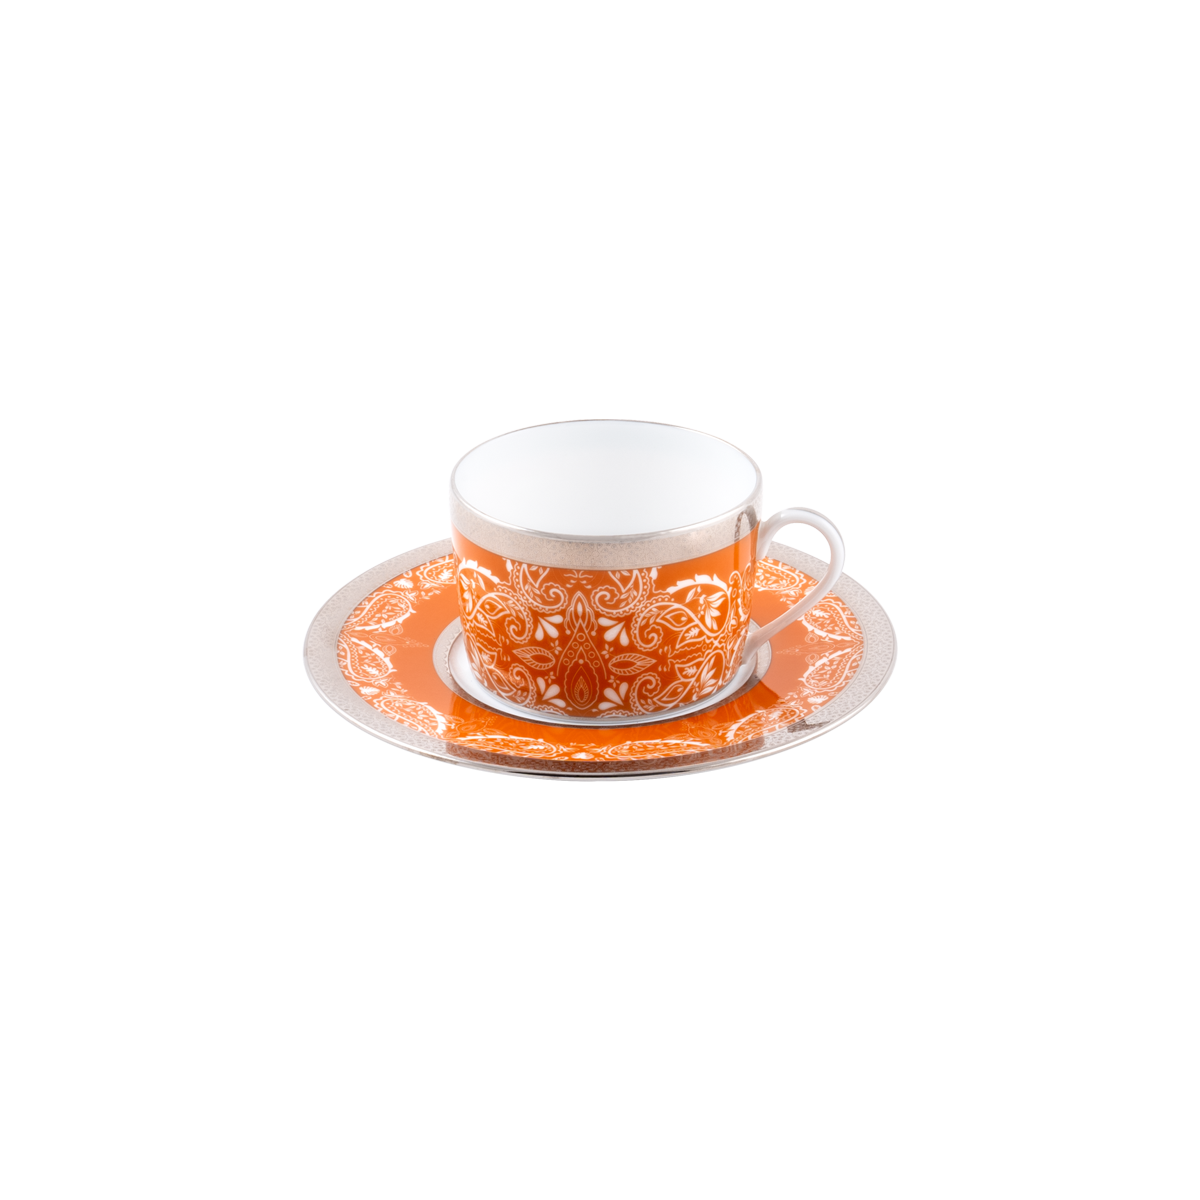 Set of 4 Teacups and Saucers - Romane Orange